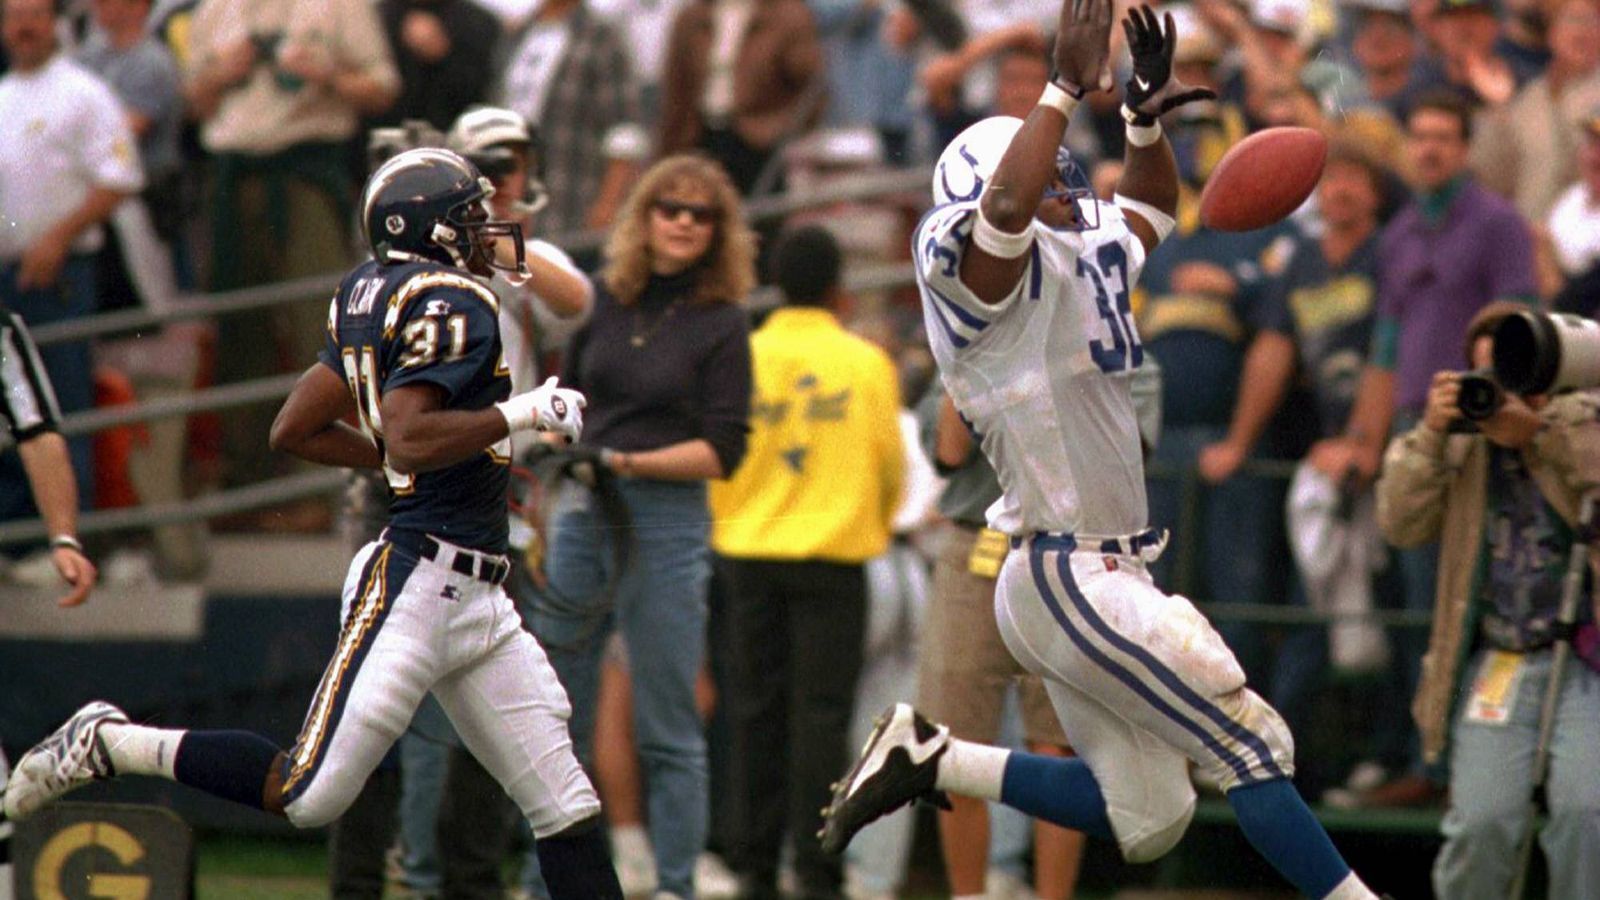 
                <strong>San Diego Chargers at Indianapolis Colts - 2 Stunden 29 Minuten</strong><br>
                Schon wieder die schnellen Colts: Gegen die Chargers, die damals noch in San Diego angesiedelt waren, setzte es 1996 zwar eine 19:26-Niederlage, aber immerhin wurde ein neuer Rekord aufgestellt. Nach nur zwei Stunden und 29 Minuten hatten die Spieler Feierabend.
              